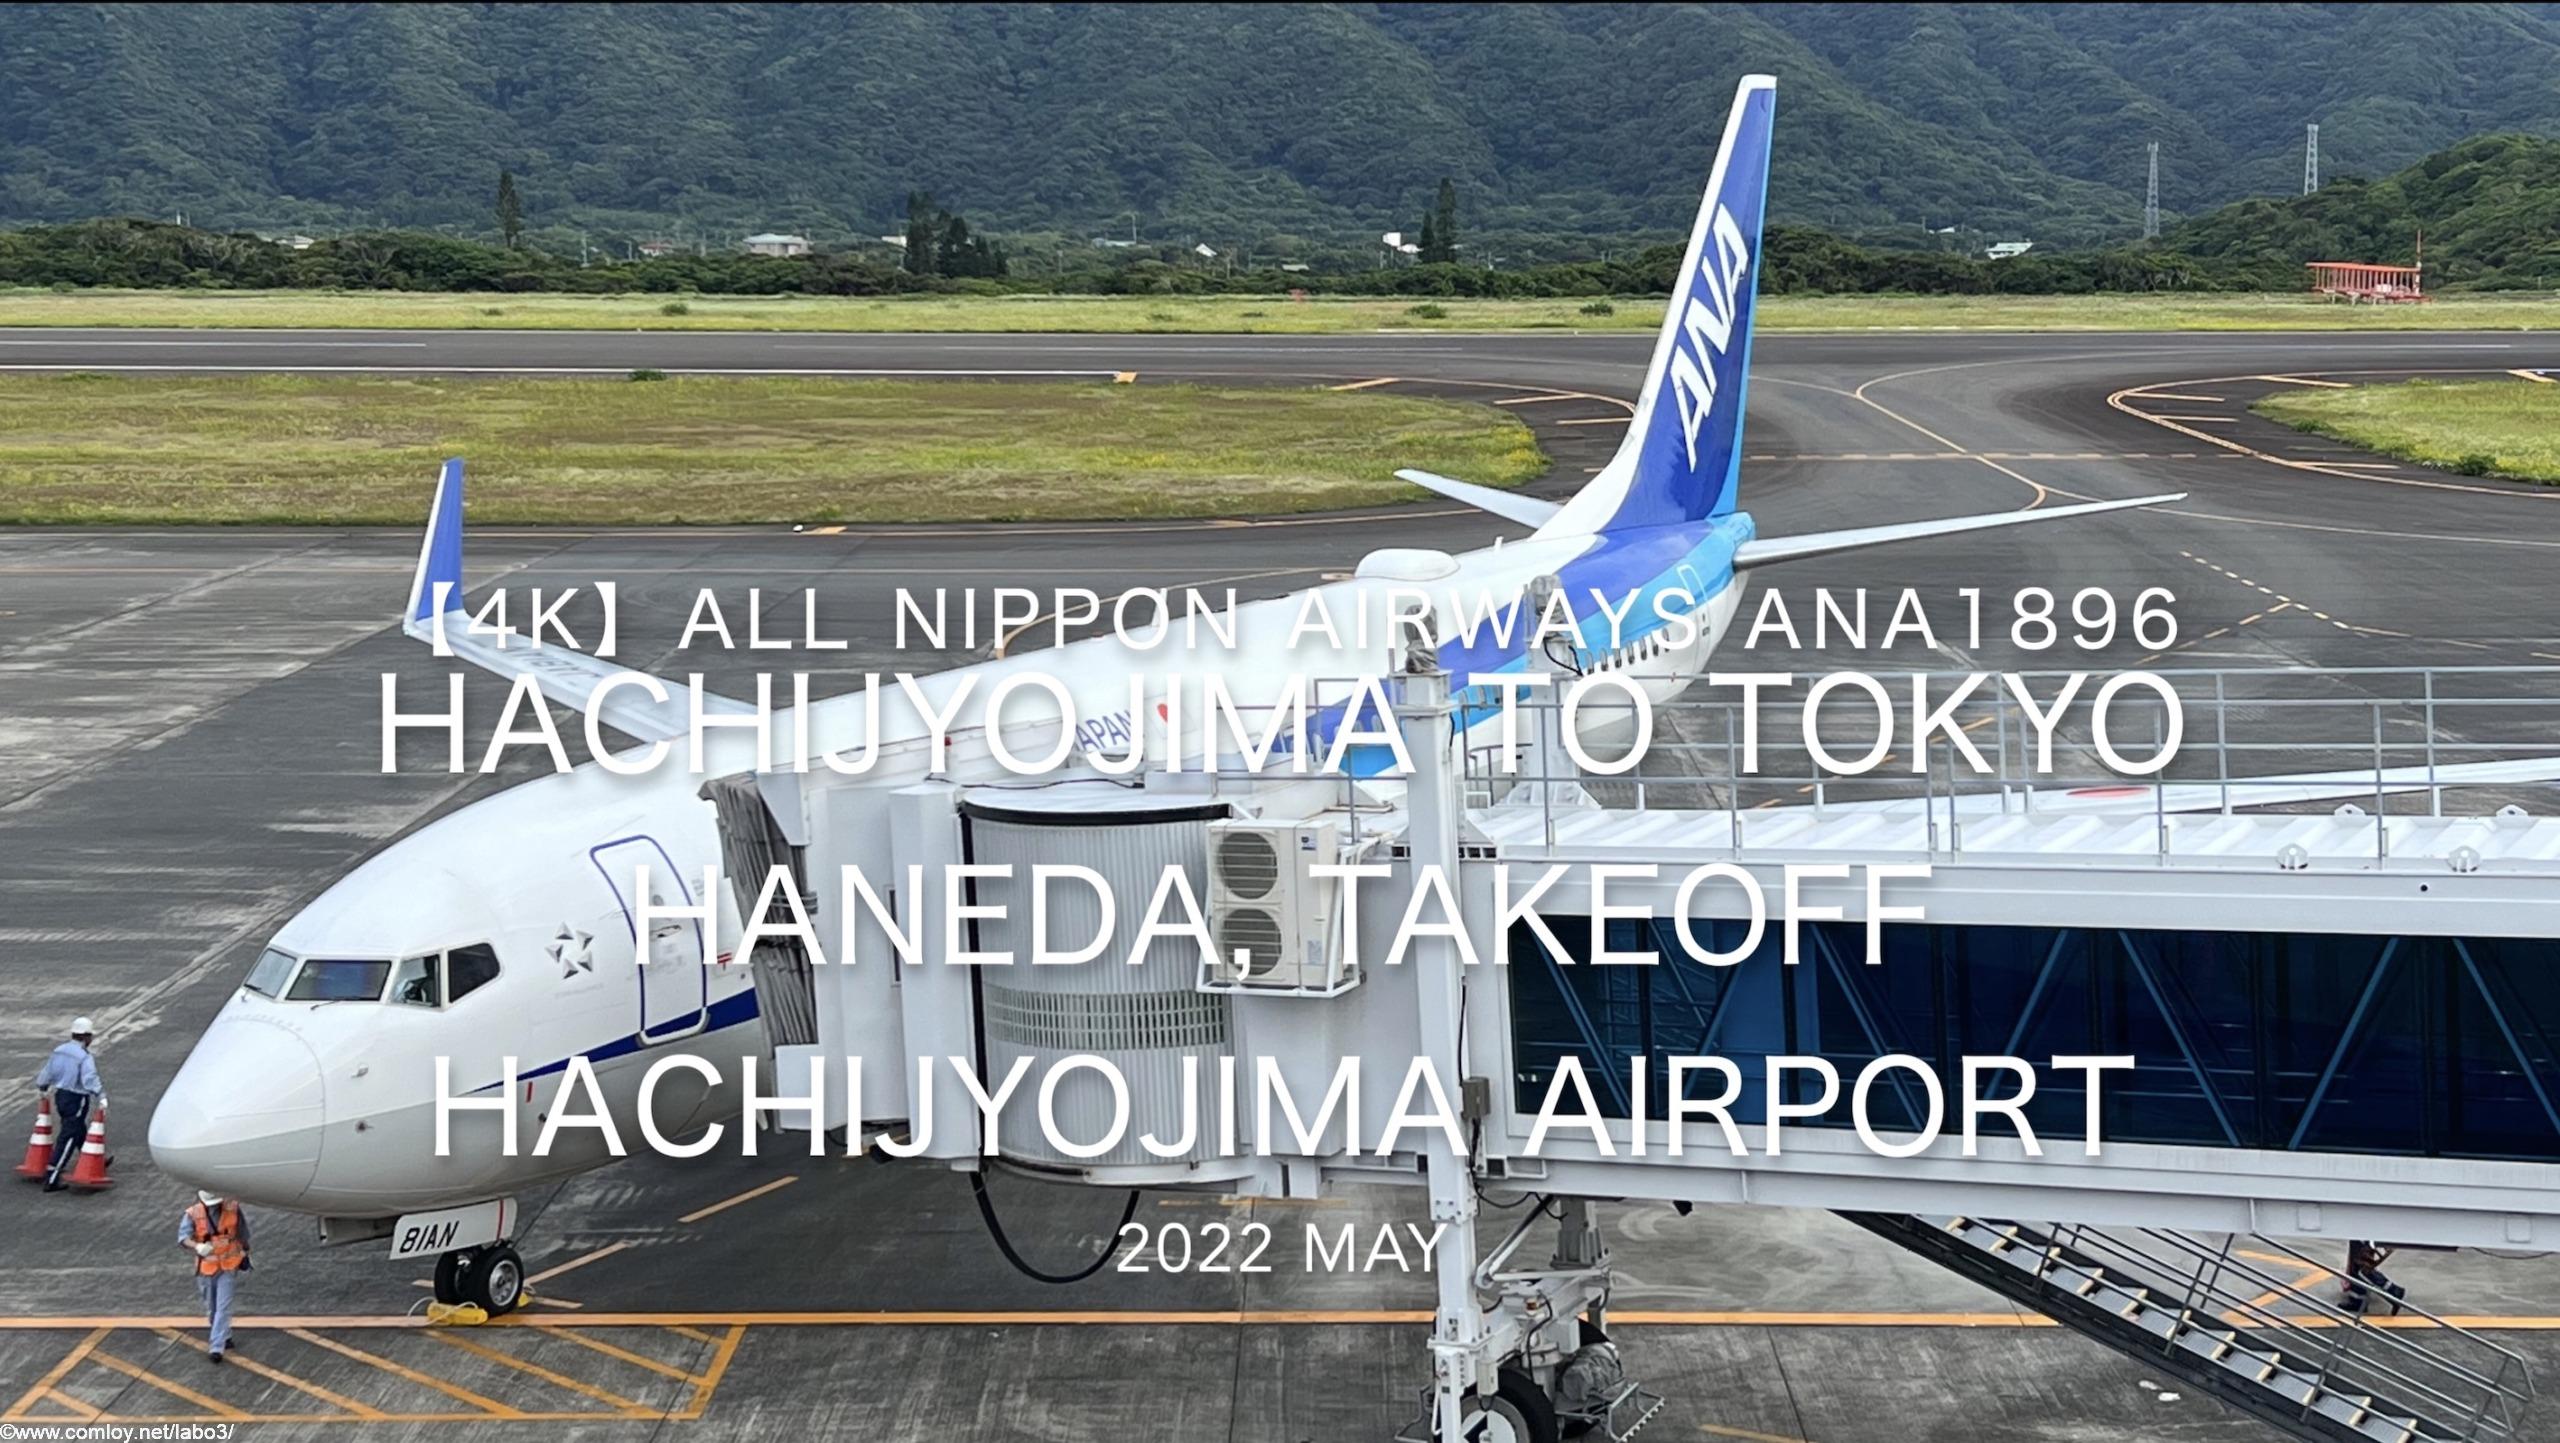 【機内から離着陸映像】2022 May All Nippon Airways ANA1896 HACHIJYOJIMA to TOKYO HANEDA, TAKEOFF TOKTO HACHIJYOJIMA Airport